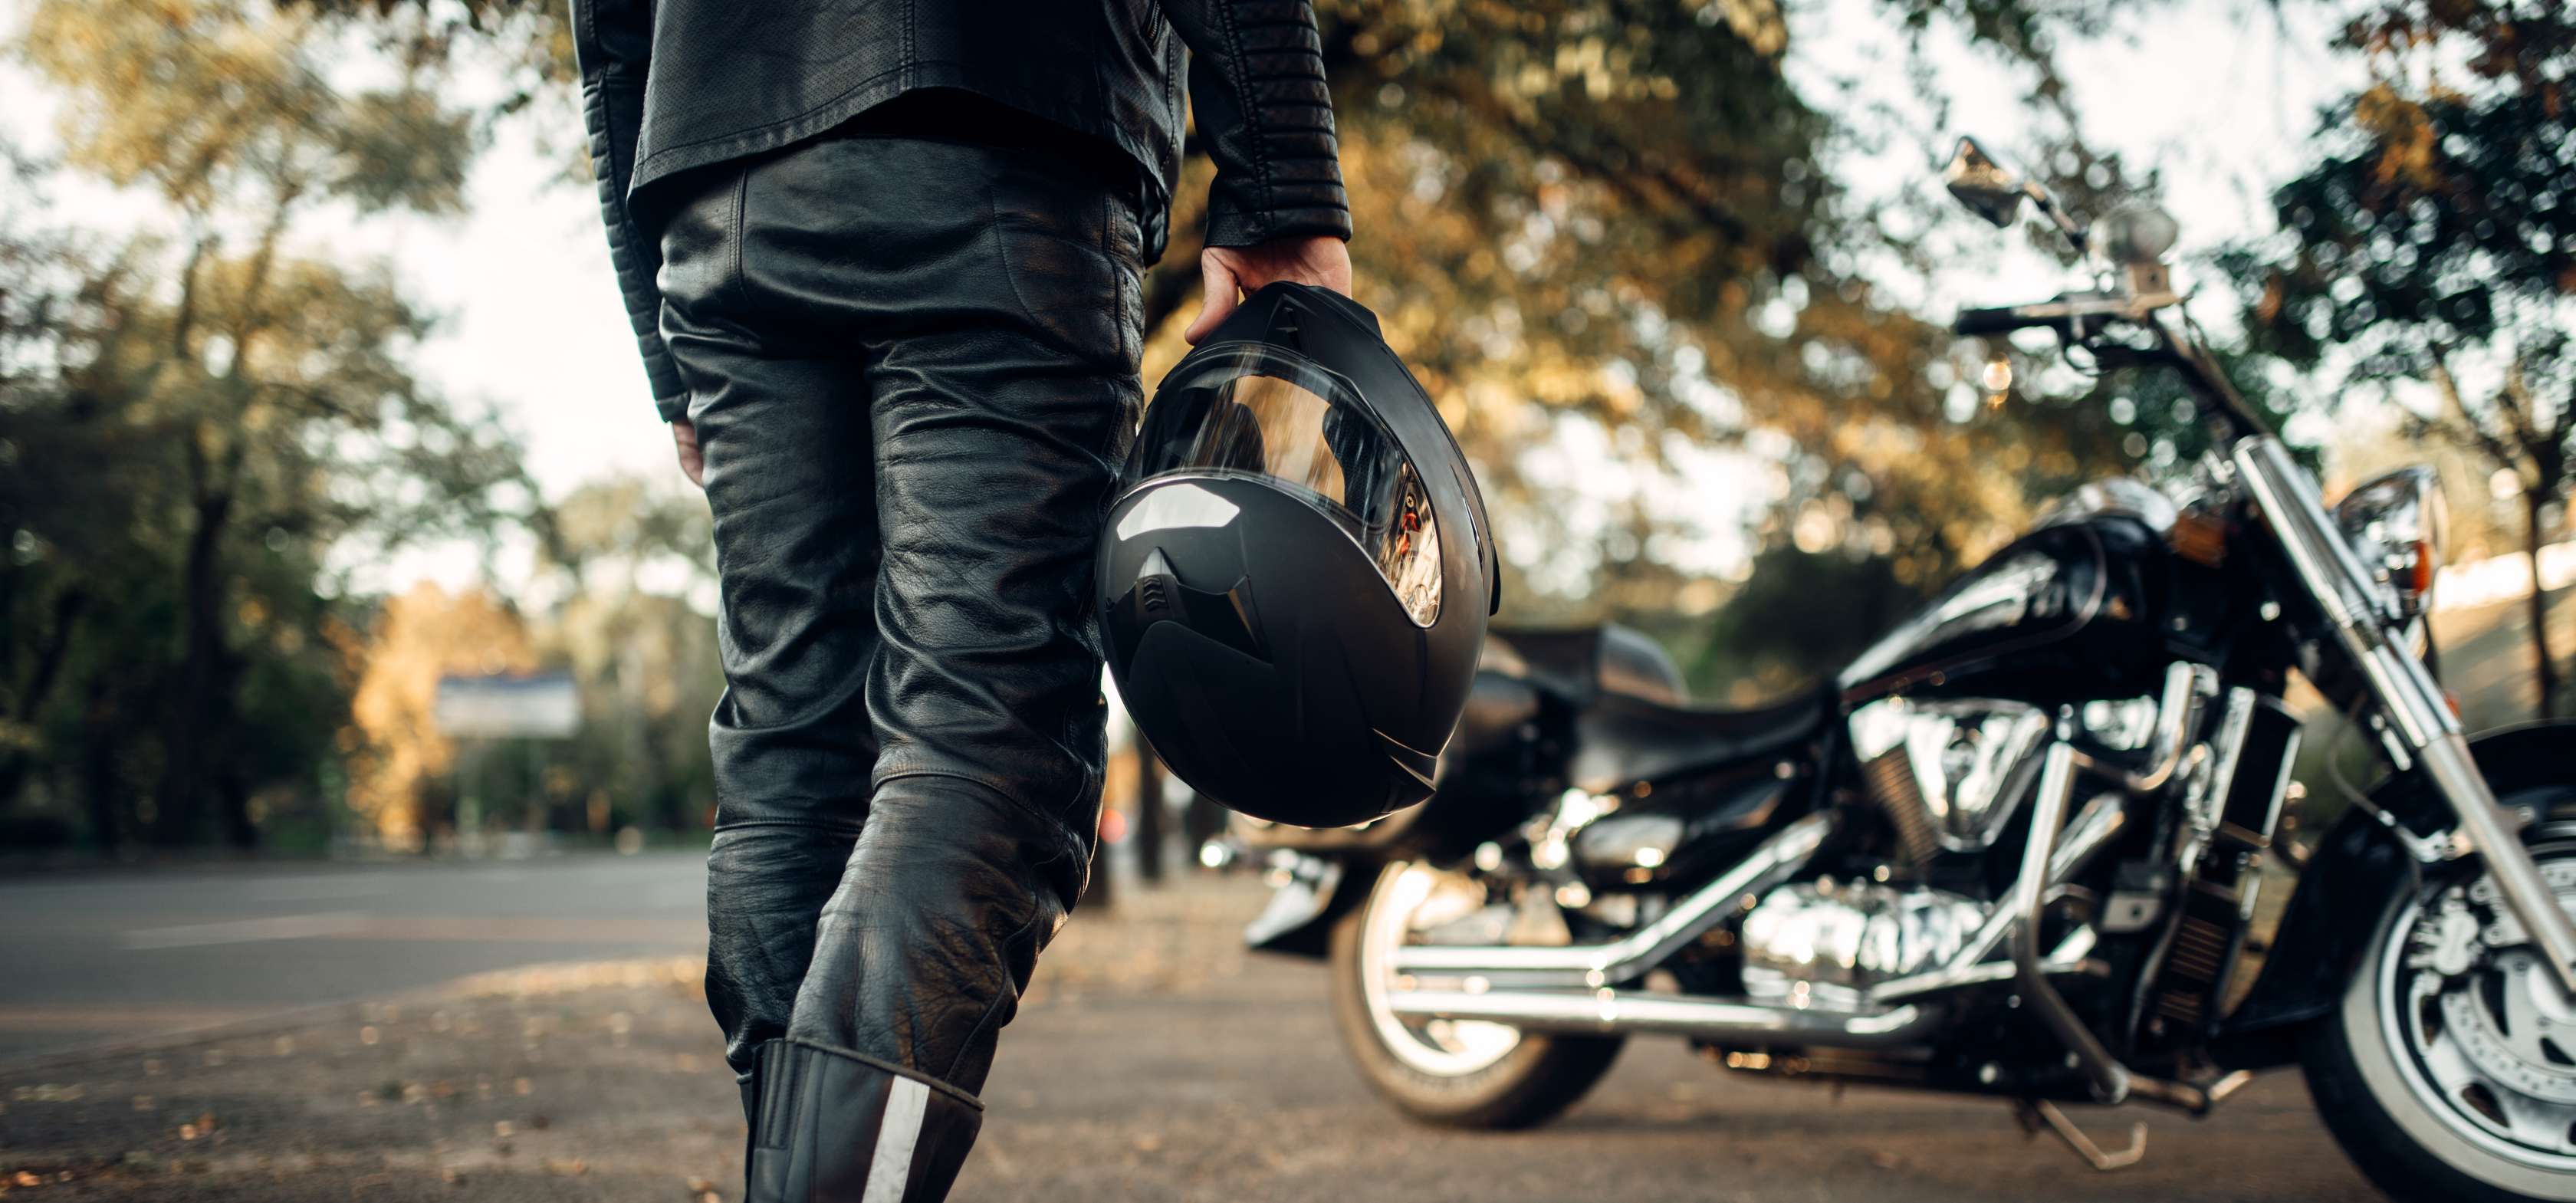 Motorrad anmelden: Mann in Lederkluft steht vor Motorrad und hält Helm in rechter Hand